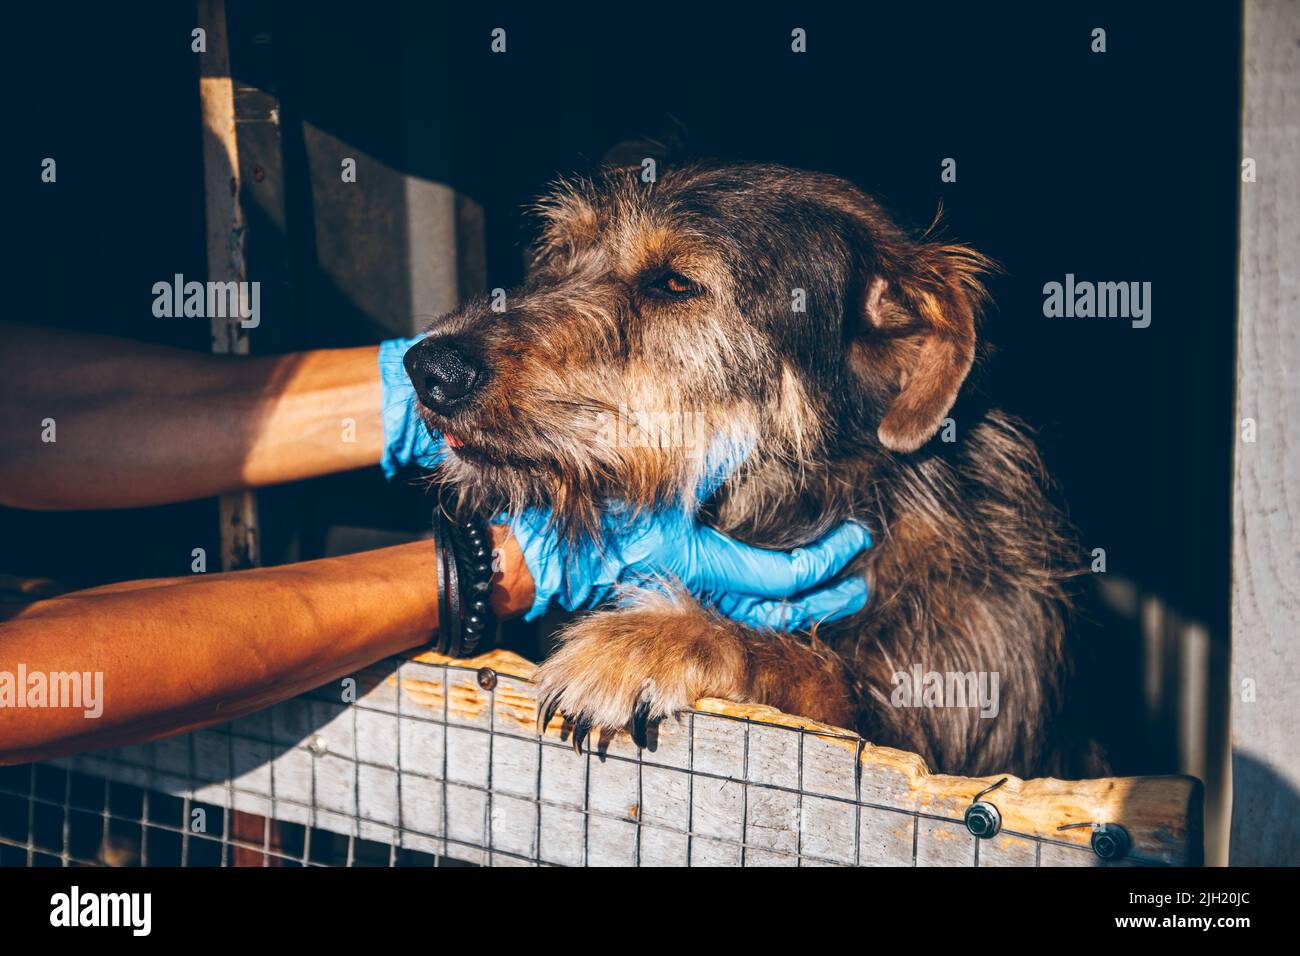 Tierarzt Hände streicheln alten obdachlosen Hund in Tierheim. Freiwillige helfen ukrainischen Haustieren. Tierhilfe. Uschhorod, Ukraine Stockfoto